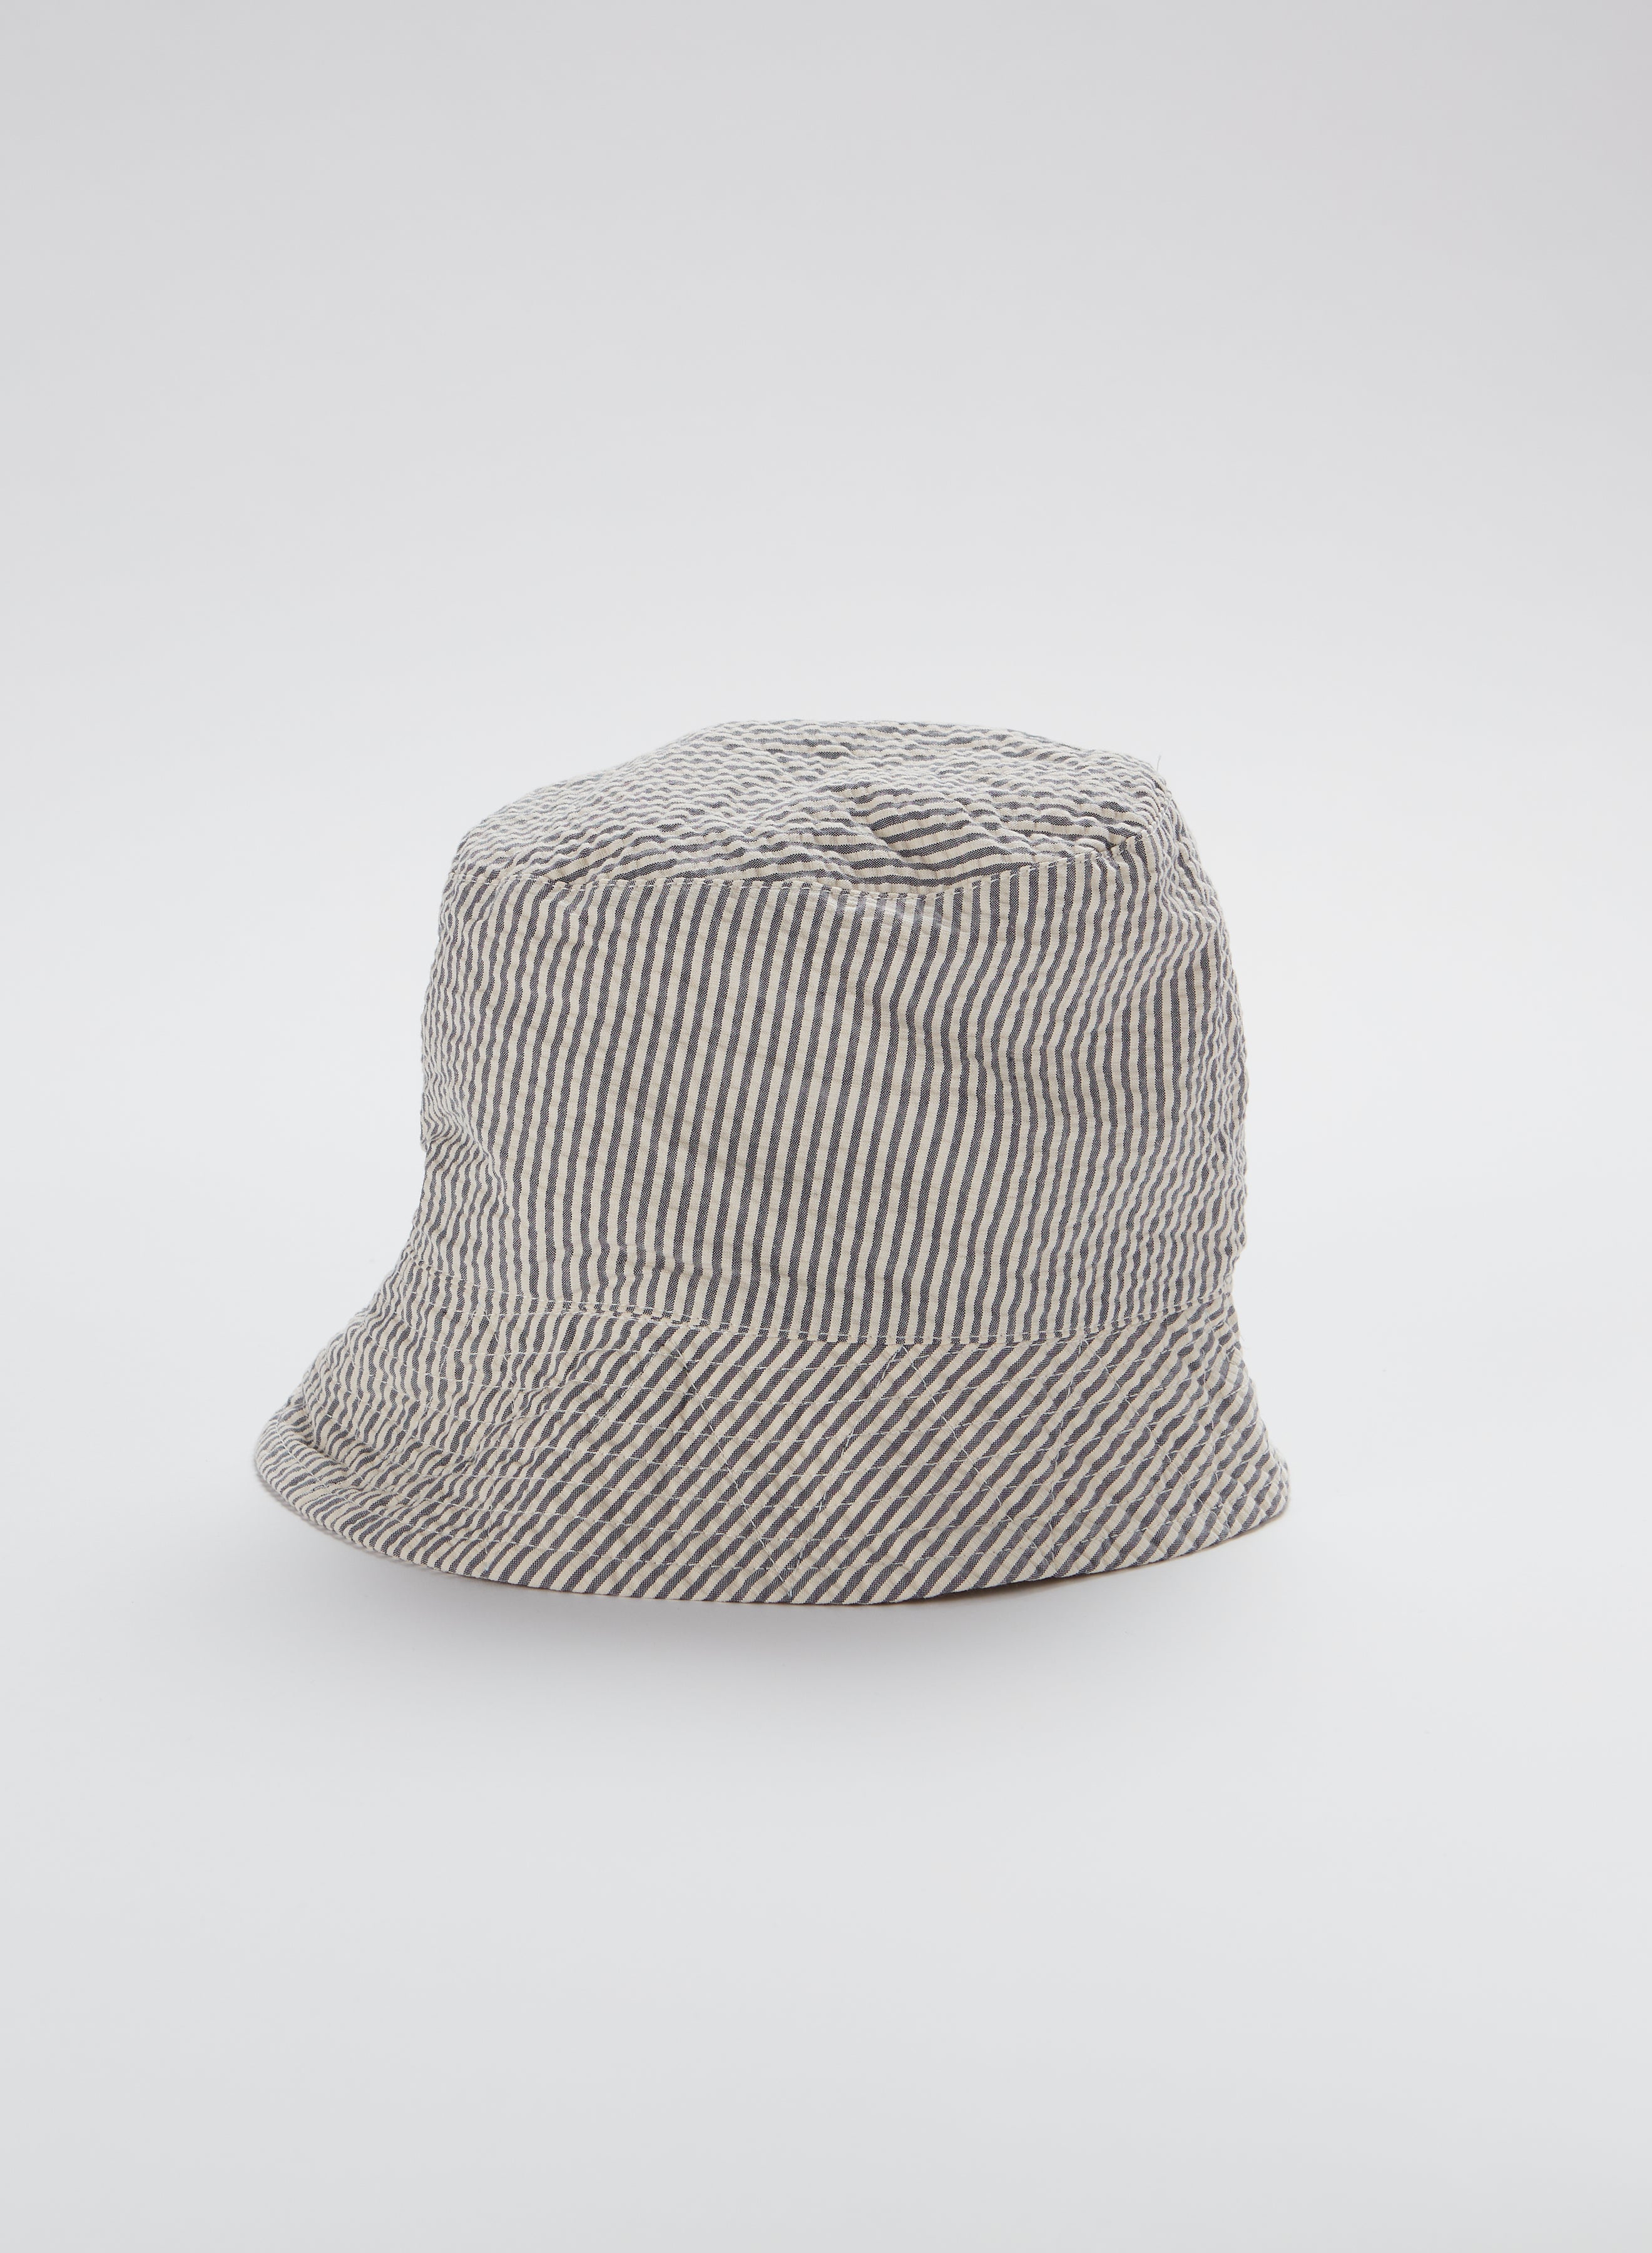 Bucket Hat - Navy / Natural Cotton Seersucker